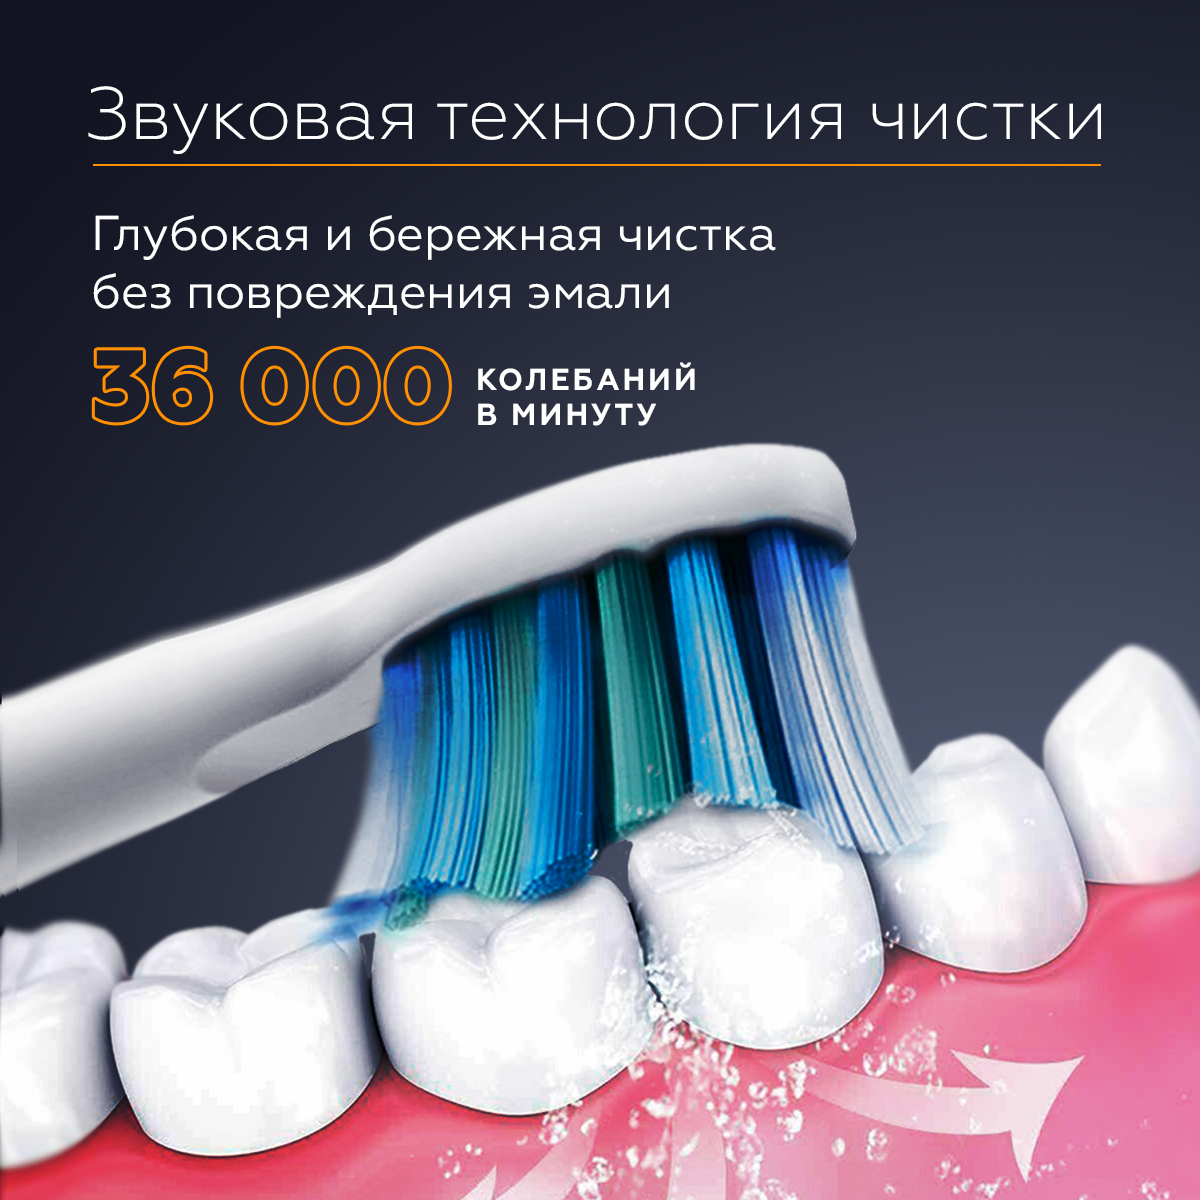 Электрическая зубная щетка AsiaCare S100, 5 режимов работы, 2 насадки, с таймером 4*30 сек, влагозащита IPX7, 30 дней на 1й зарядке. Белая